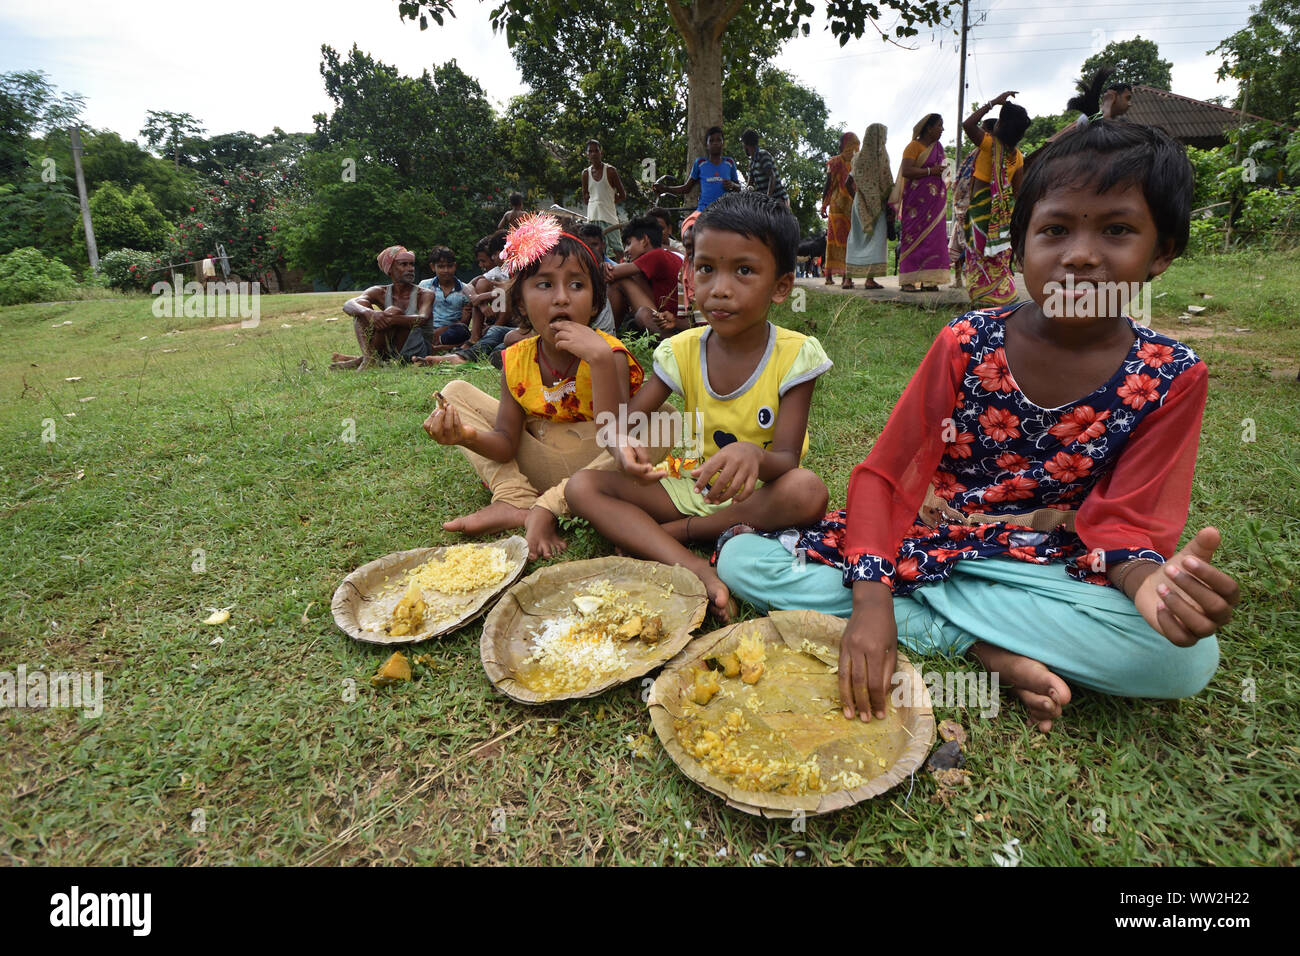 Drei Mädchen sind unter Berücksichtigung der open air Mittagessen auf dem Boden. Jhargram, West Midnapore, Indien. Stockfoto